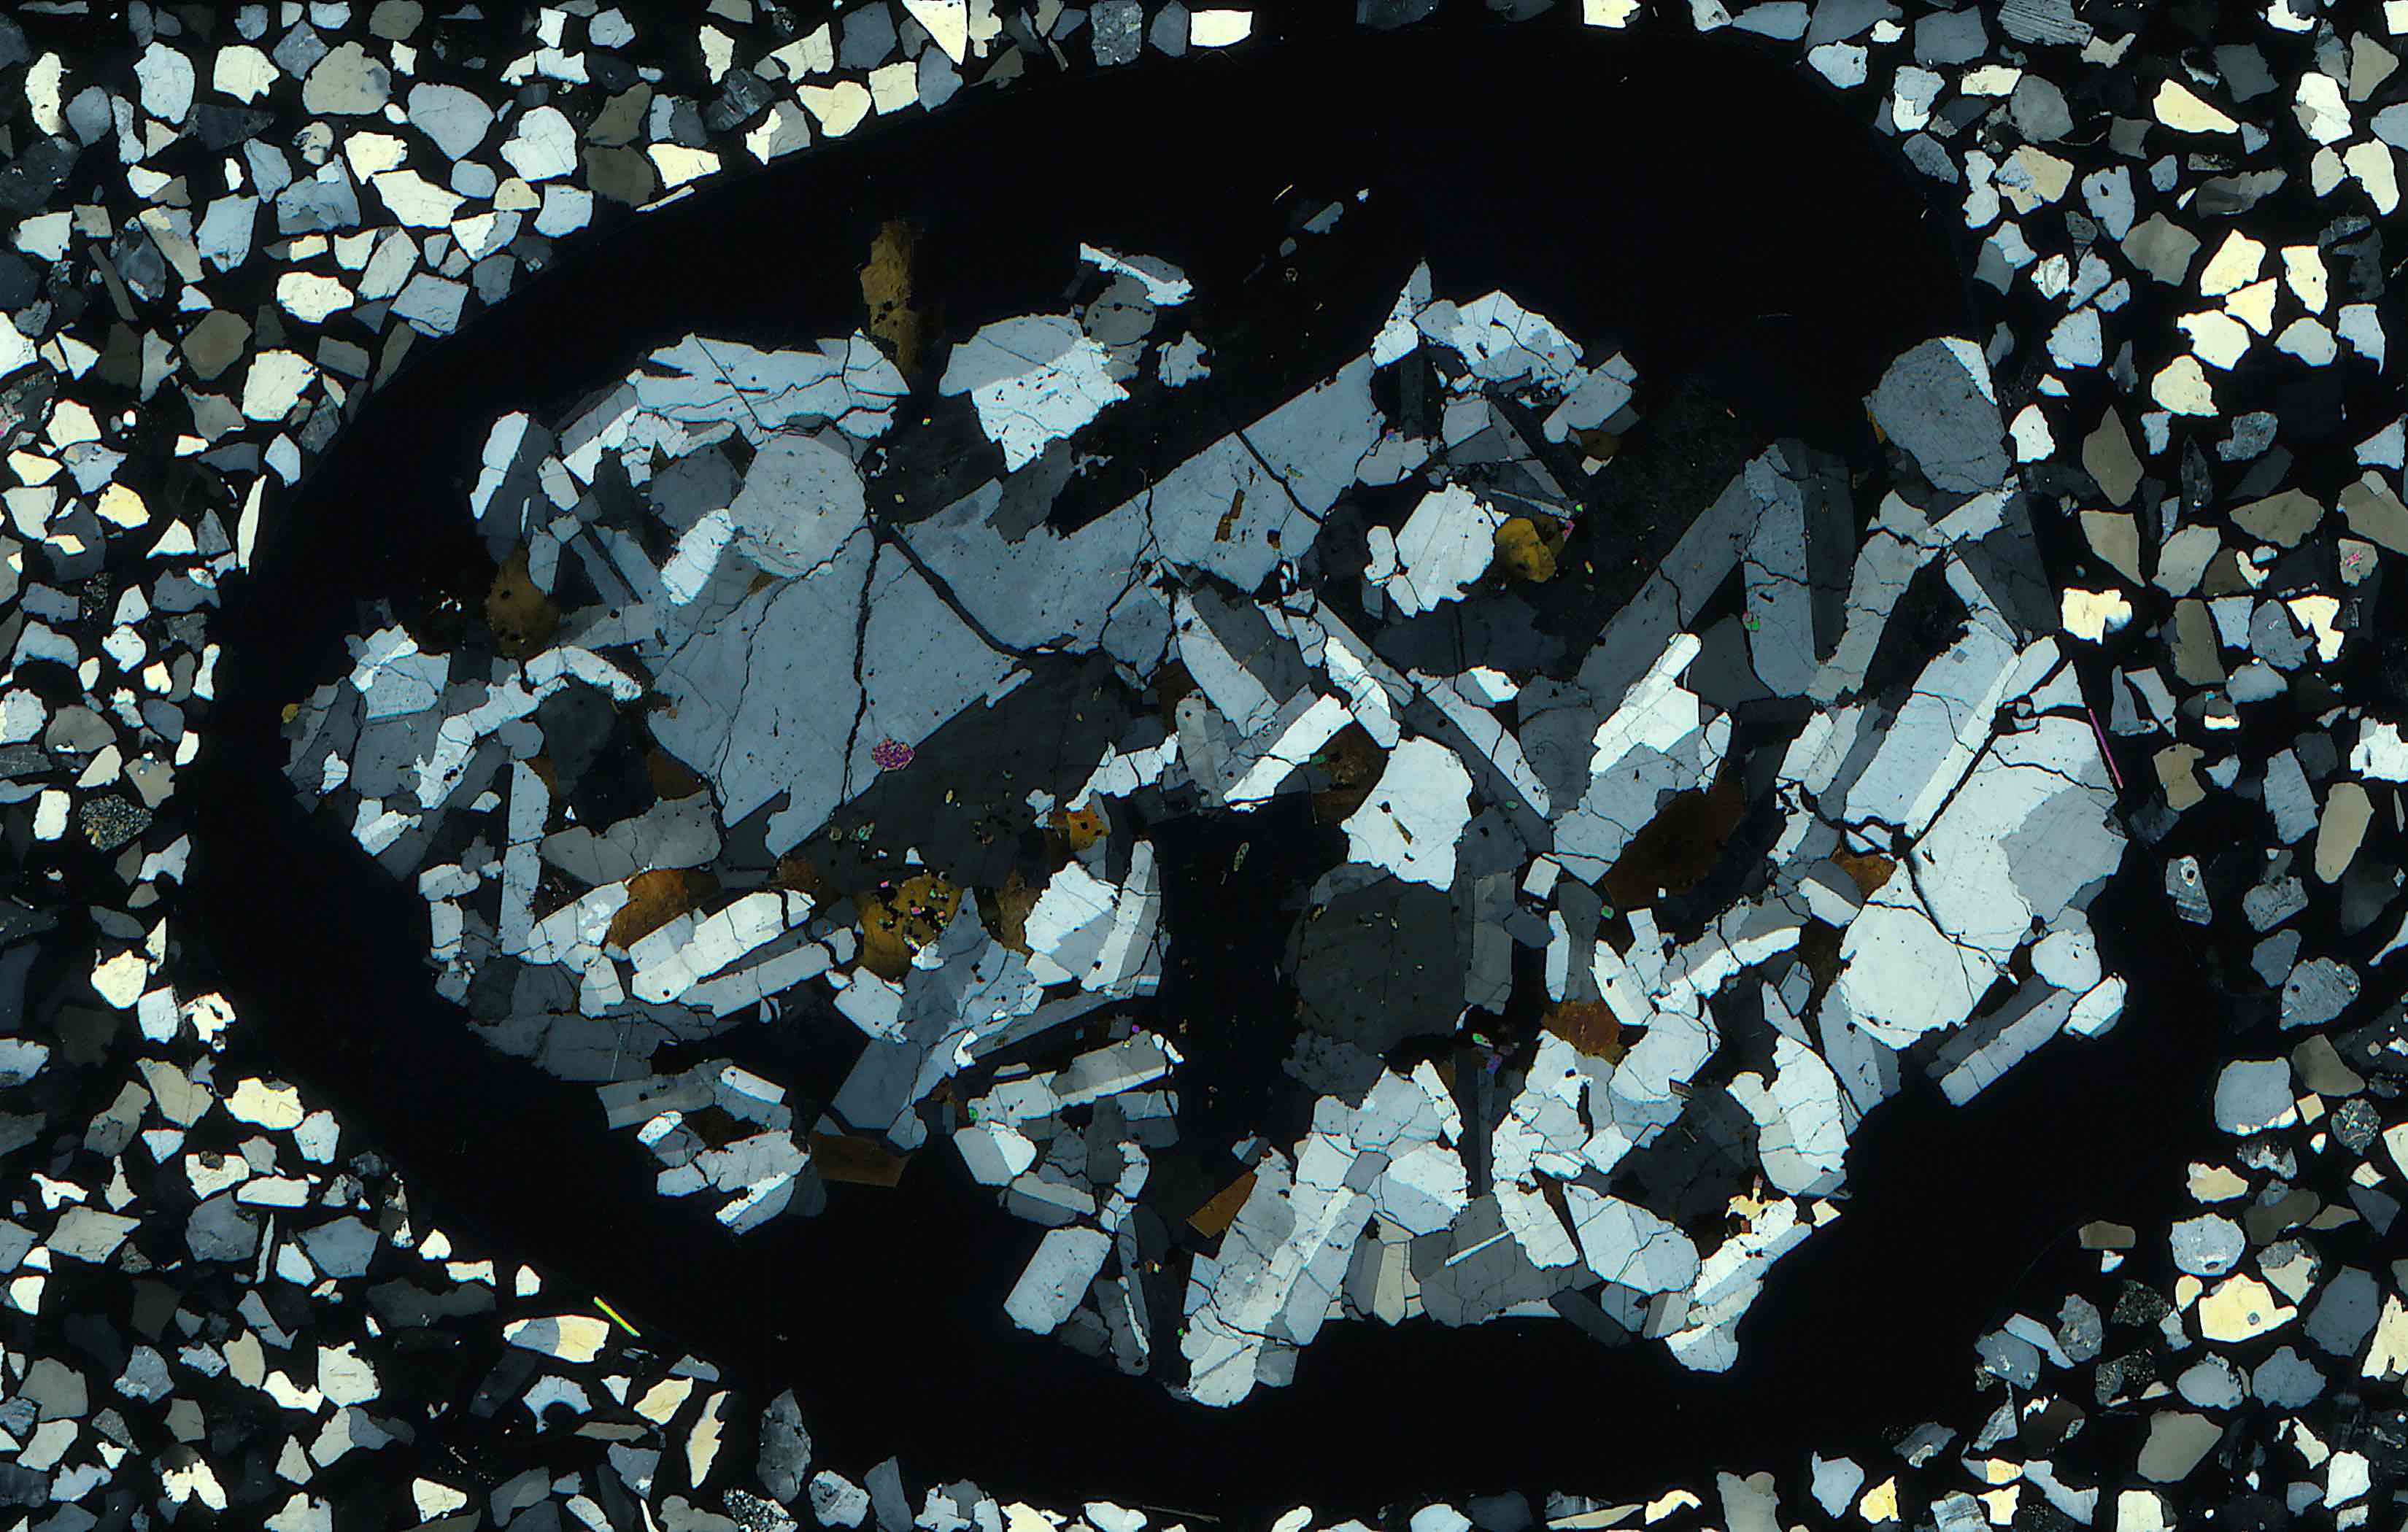 pyrochlore and katophorite in syenite